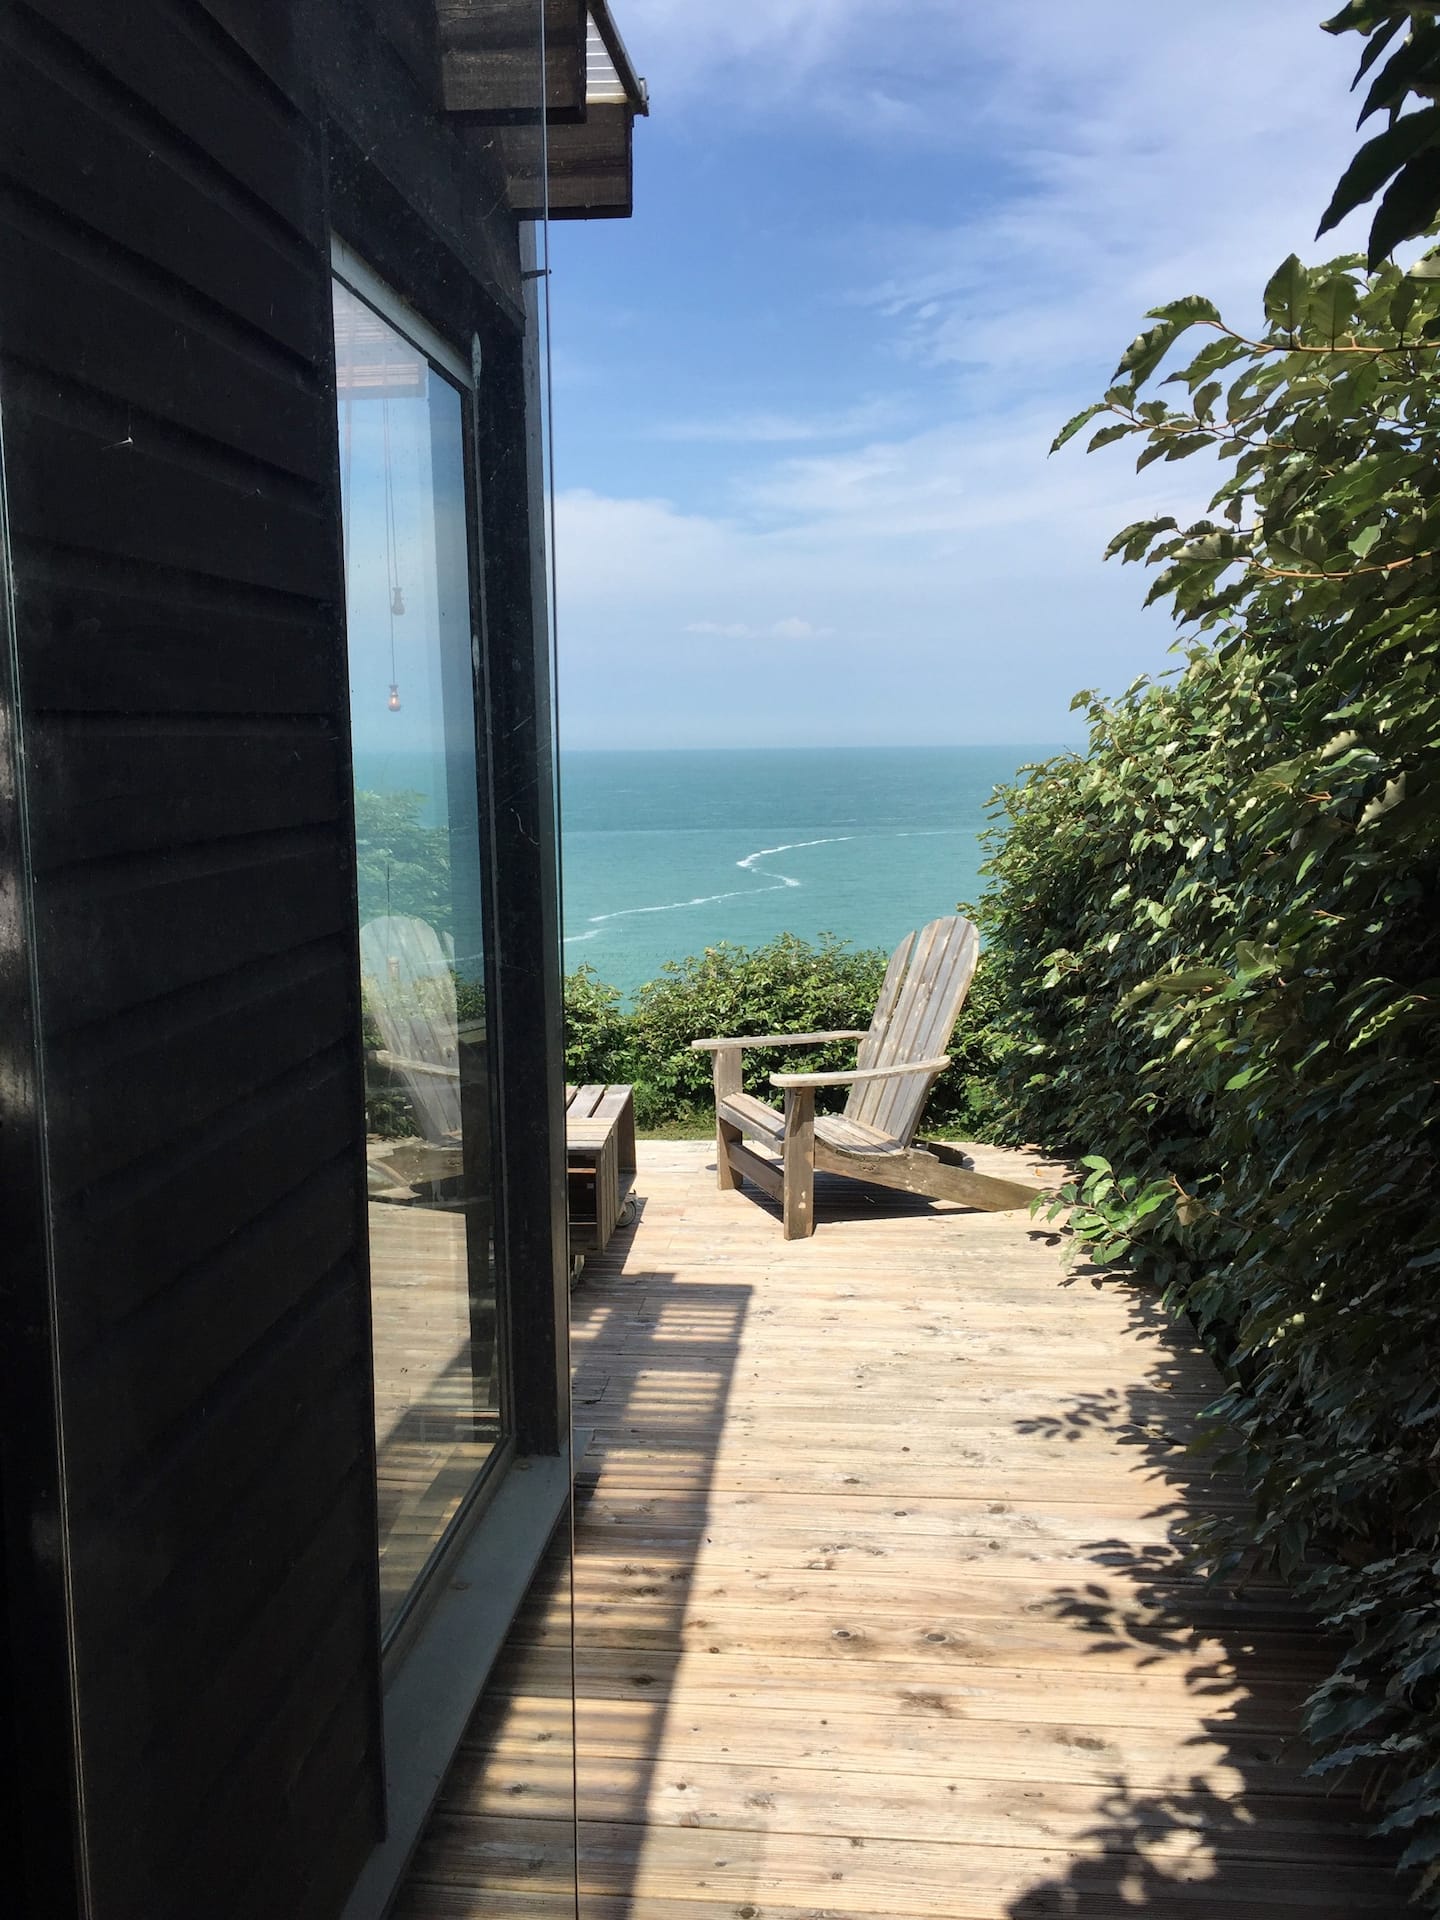 Airbnb strandhuis kliffen Normandie